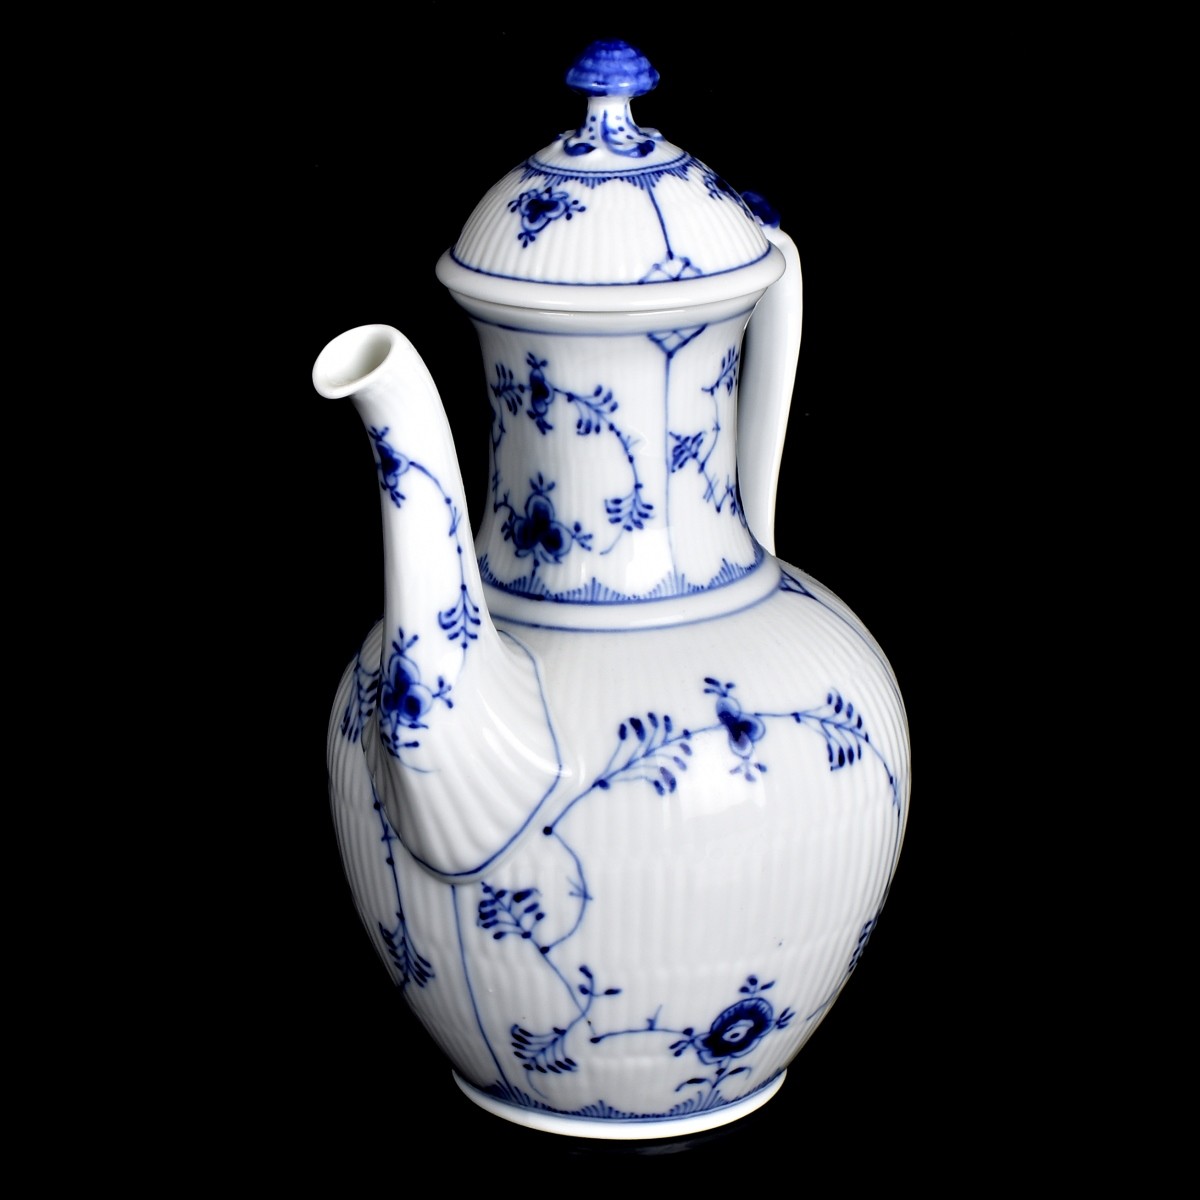 Royal Copenhagen Porcelain Teapot